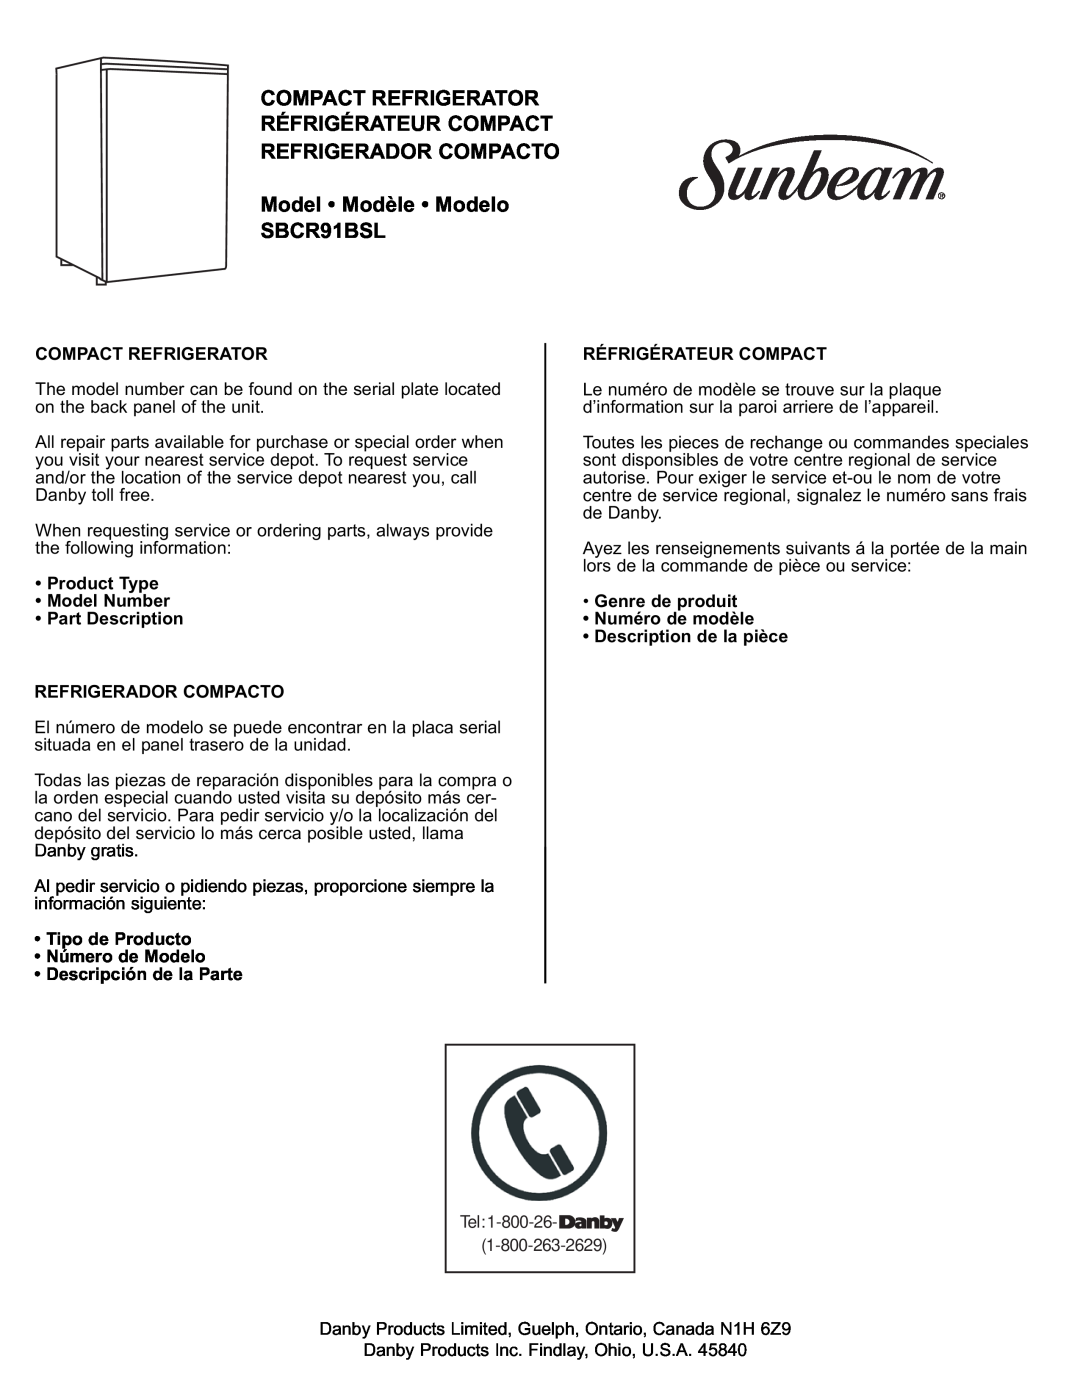 Sunbeam Model Modèle Modelo SBCR91BSL, Product Type Model Number Part Description, Tipo de Producto Número de Modelo 